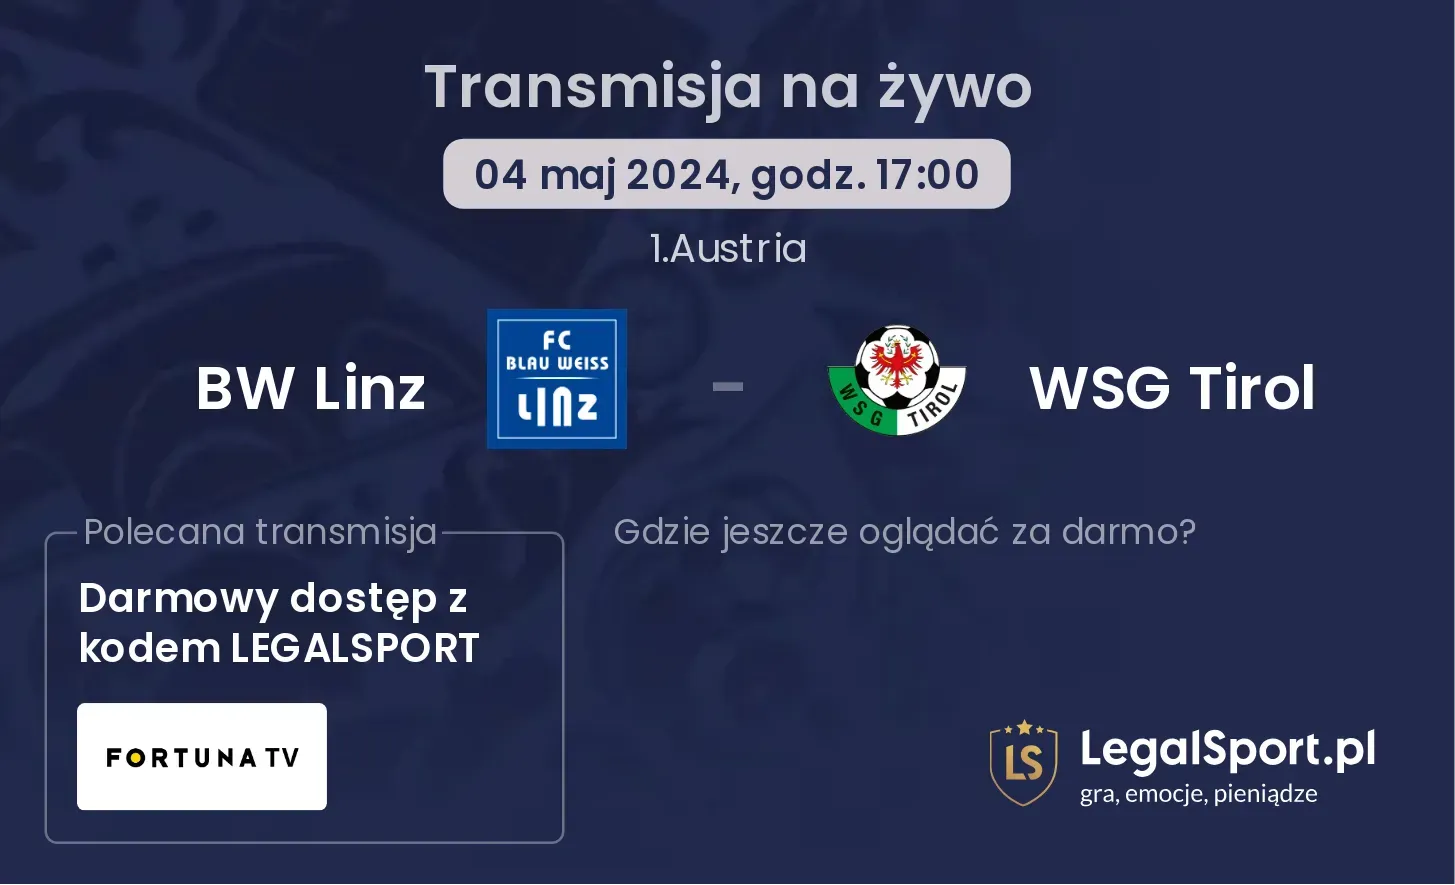 BW Linz - WSG Tirol transmisja na żywo